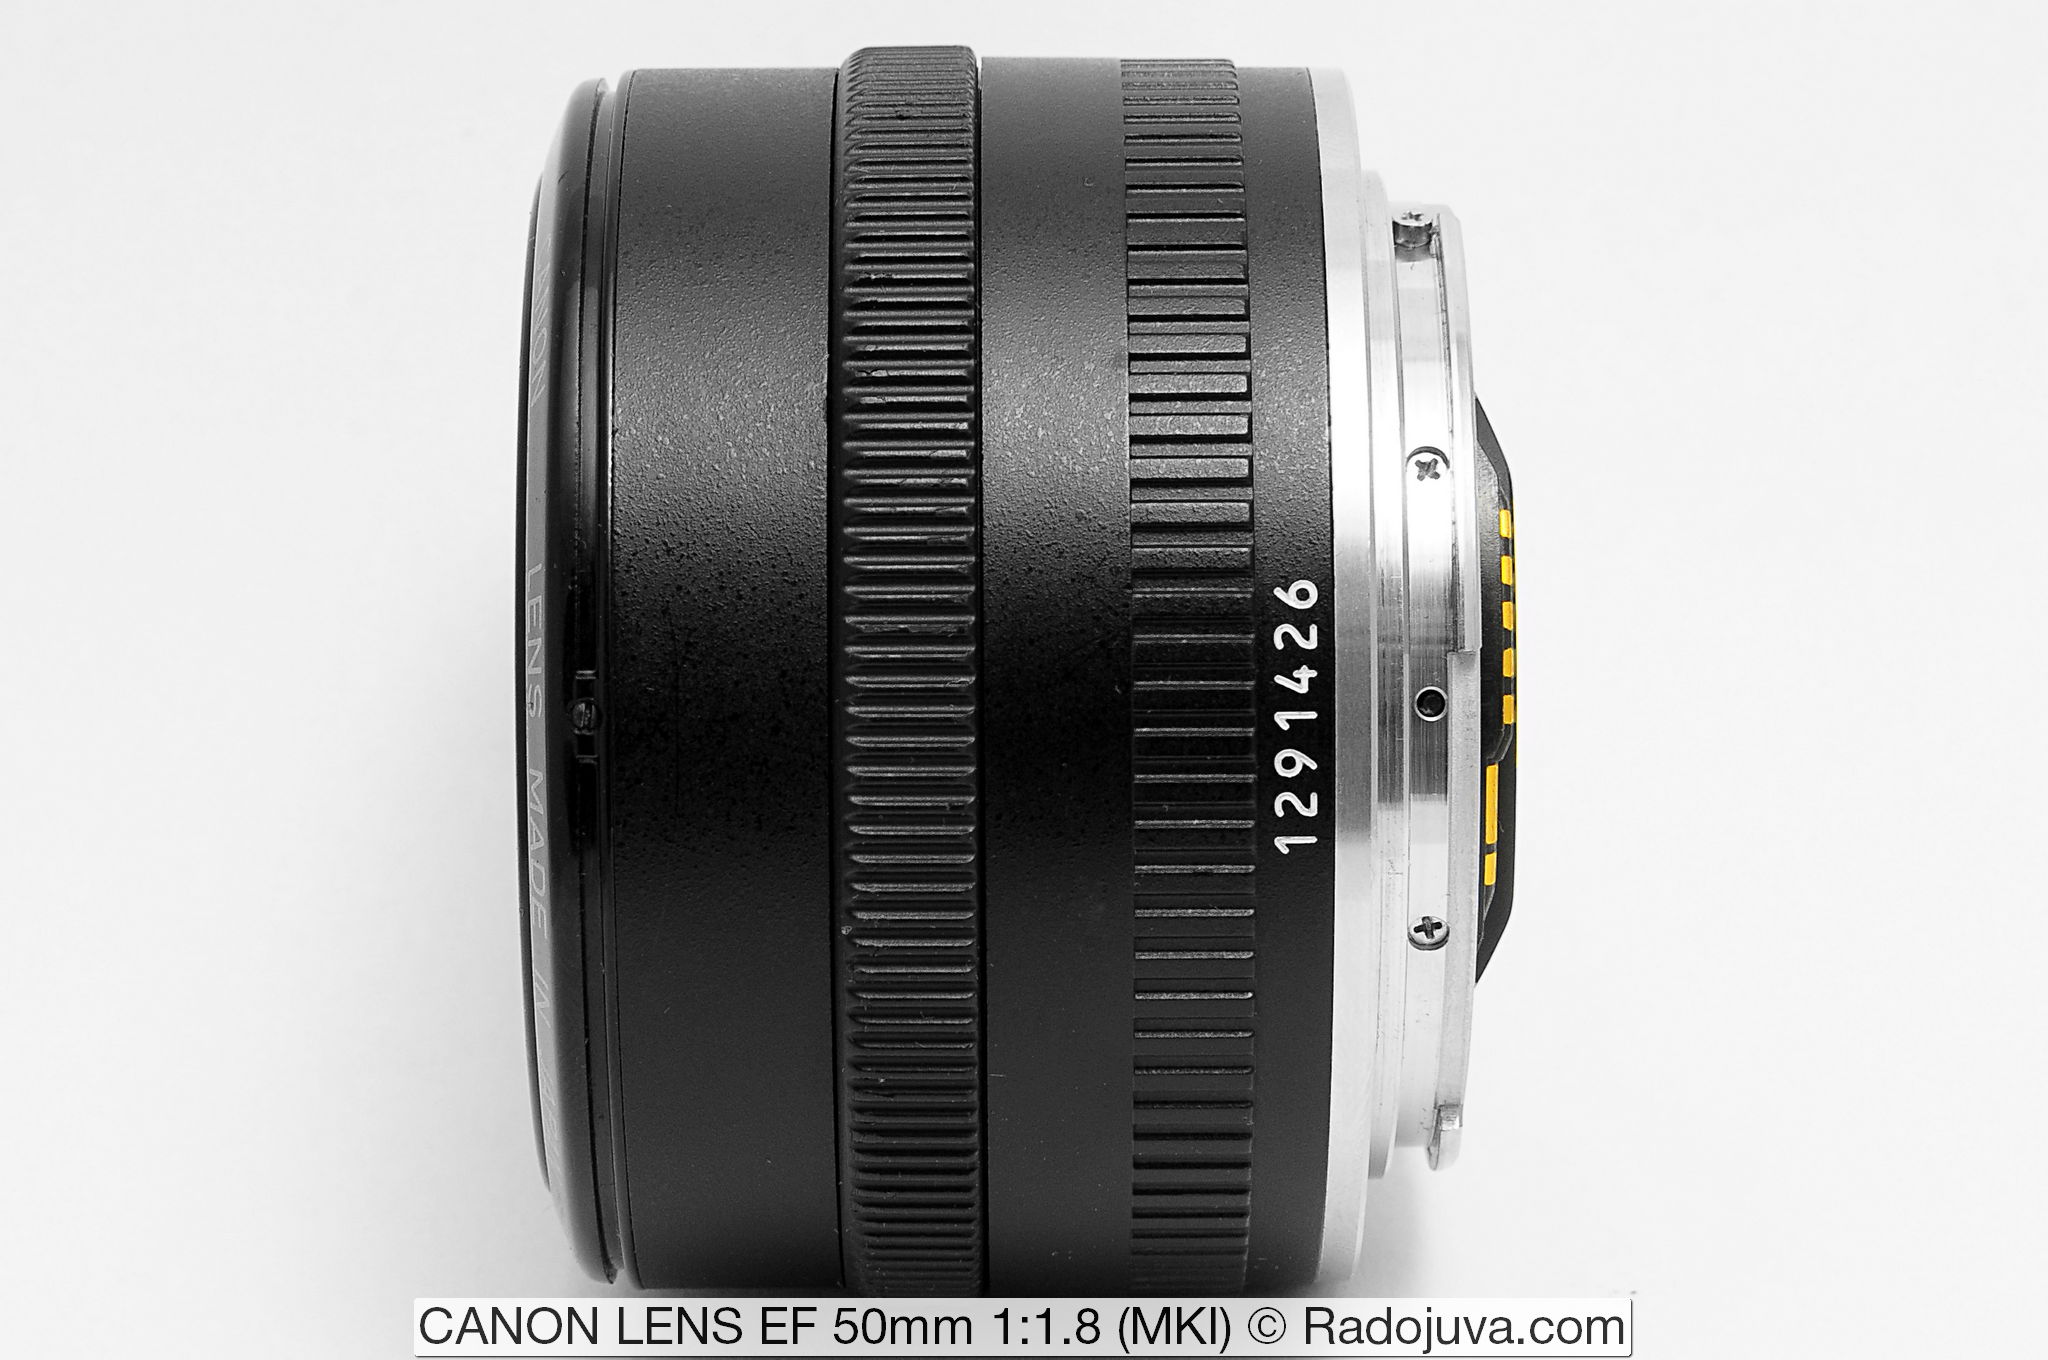 CANON LENS EF 50mm 1: 1.8 (MKI)